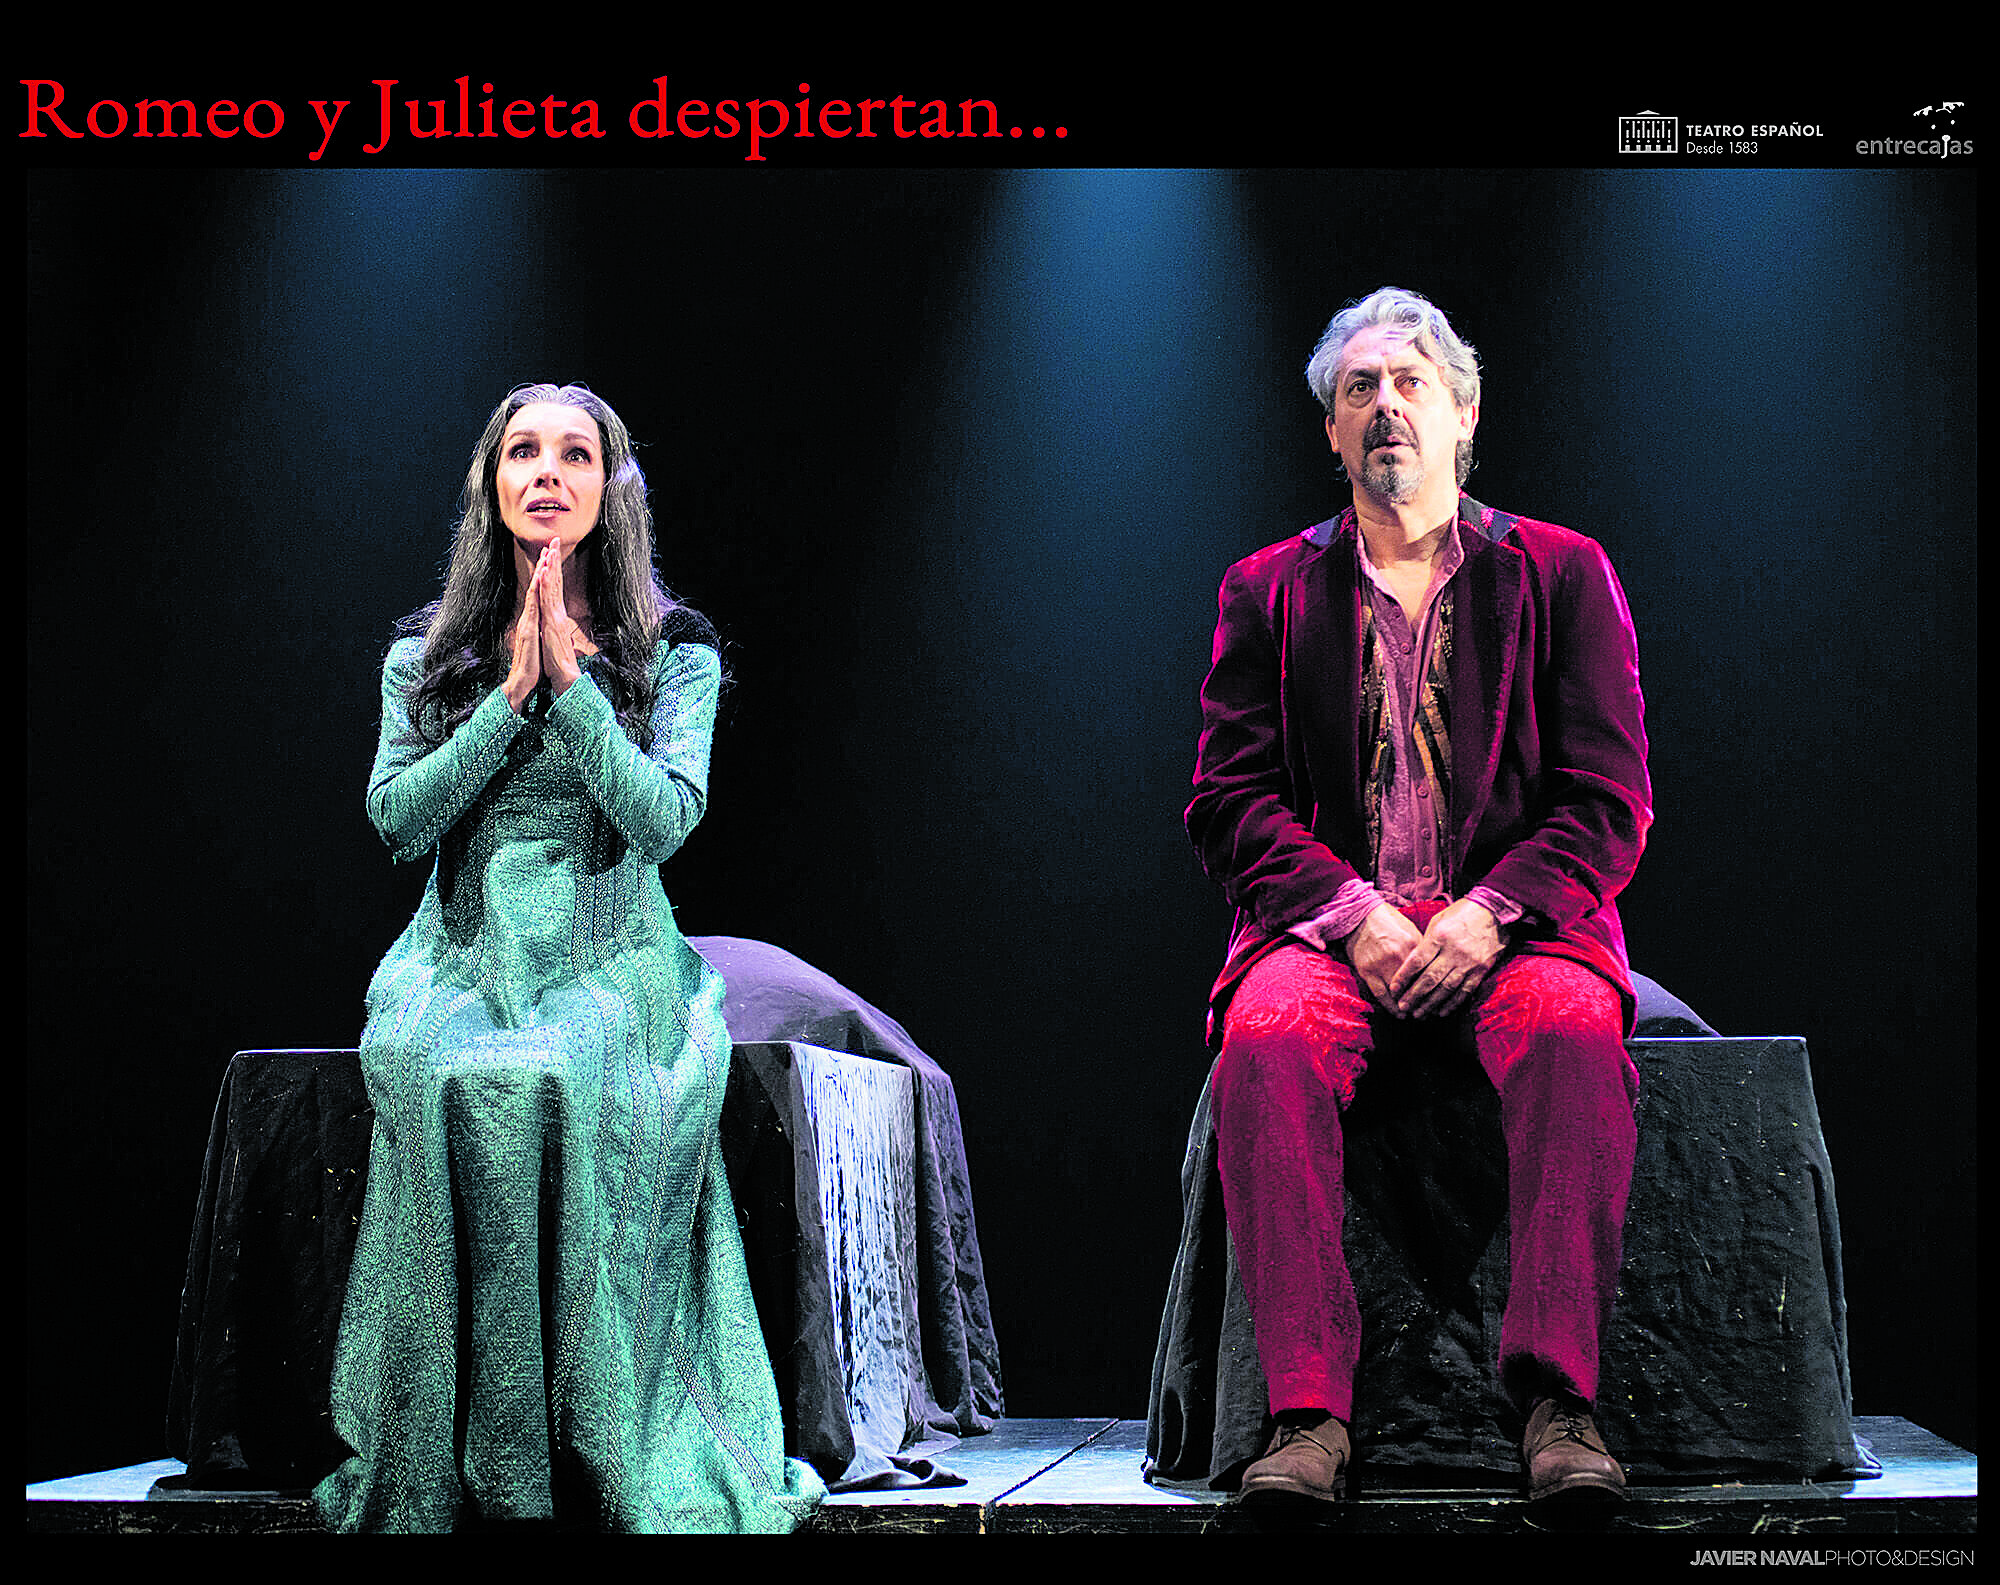 Ana Belén y Jesús Noguero personifican a los amantes de Verona en esta revisitación de la tragedia de Shakespeare que el jueves llega al Auditorio. | JAVIER NAVAL